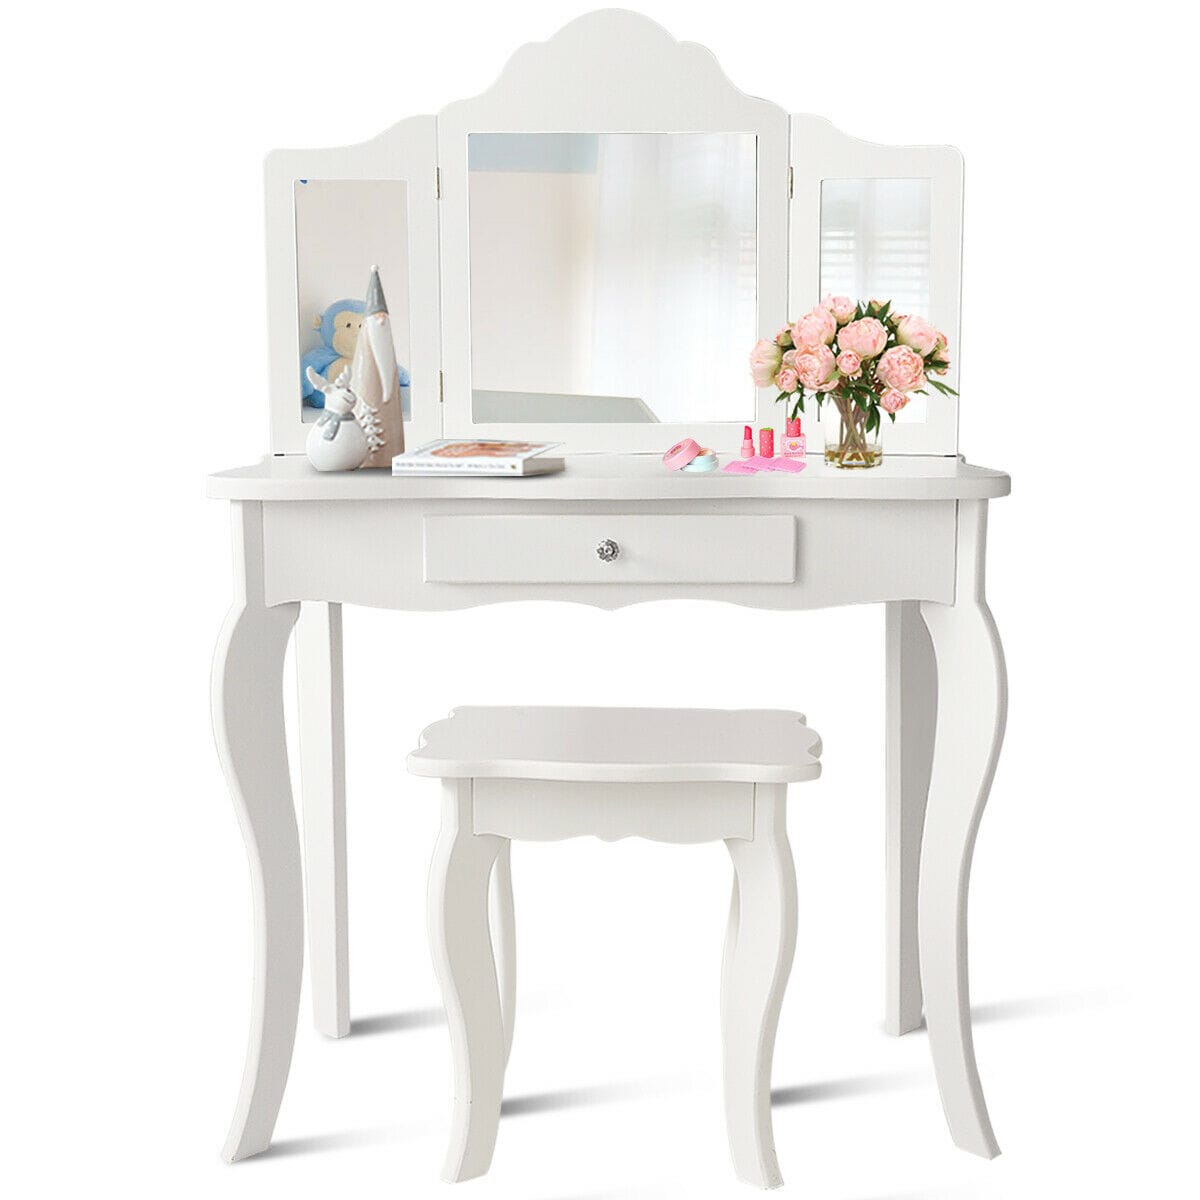 3 Foldable Mirror Girl Pink Stars Vanity Table Children Dressing Makeup Desk kit 